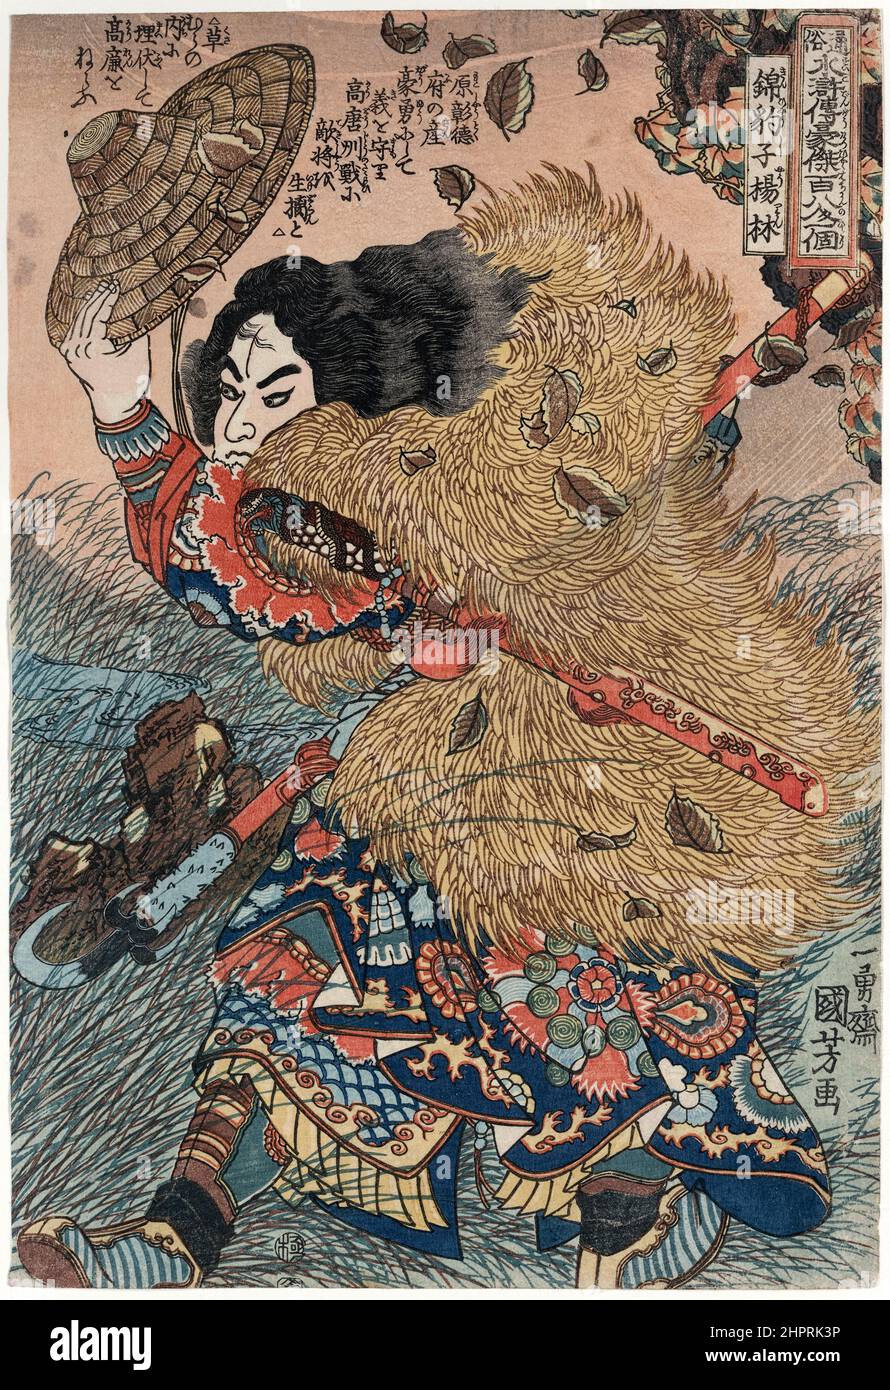 Yang Lin de The Water Margin imprimé sur bois par l'artiste ukiyo-e japonais Utagawa Kuniyoshi (1798-1861). Photographie de l'imprimé original en bois créé en 1827. Banque D'Images